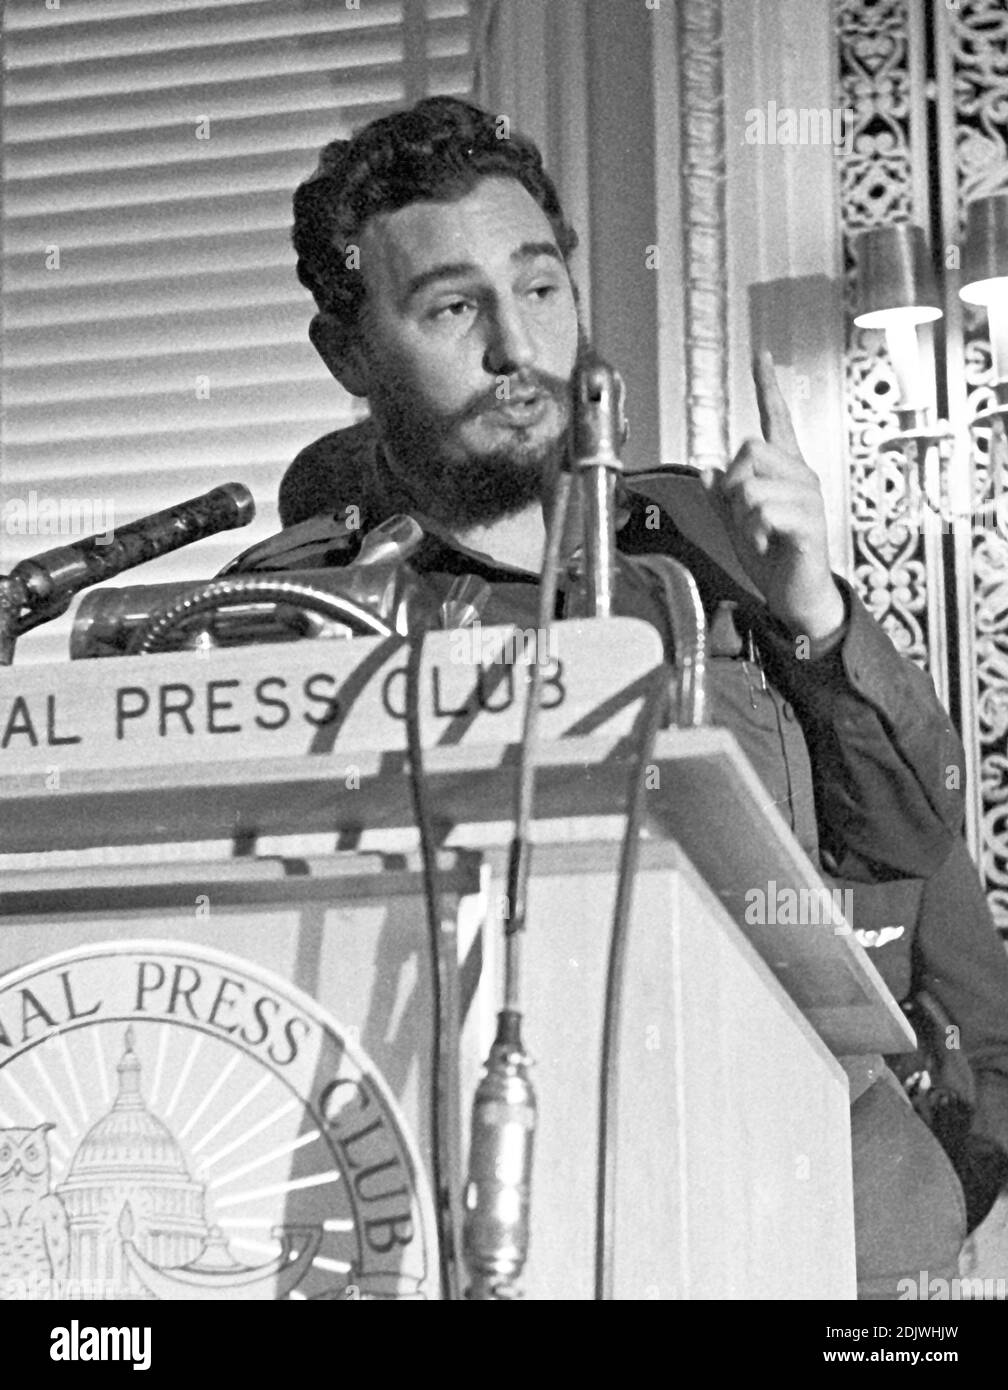 Der kubanische Premierminister Fidel Castro spricht am 20. April 1959 zu einem Mittagessen im National Press Club in Washington, DC, USA. Sein Auftritt kam weniger als vier Monate nach seiner Machtübernahme in Kuba und er sagte, er habe keine diktatorischen Ambitionen. Foto von Benjamin E. 'Gene' Forte/CNP/ABACAPRESS.COM Foto von Arnie Sachs/CNP/ABACAPRESS.COM Stockfoto